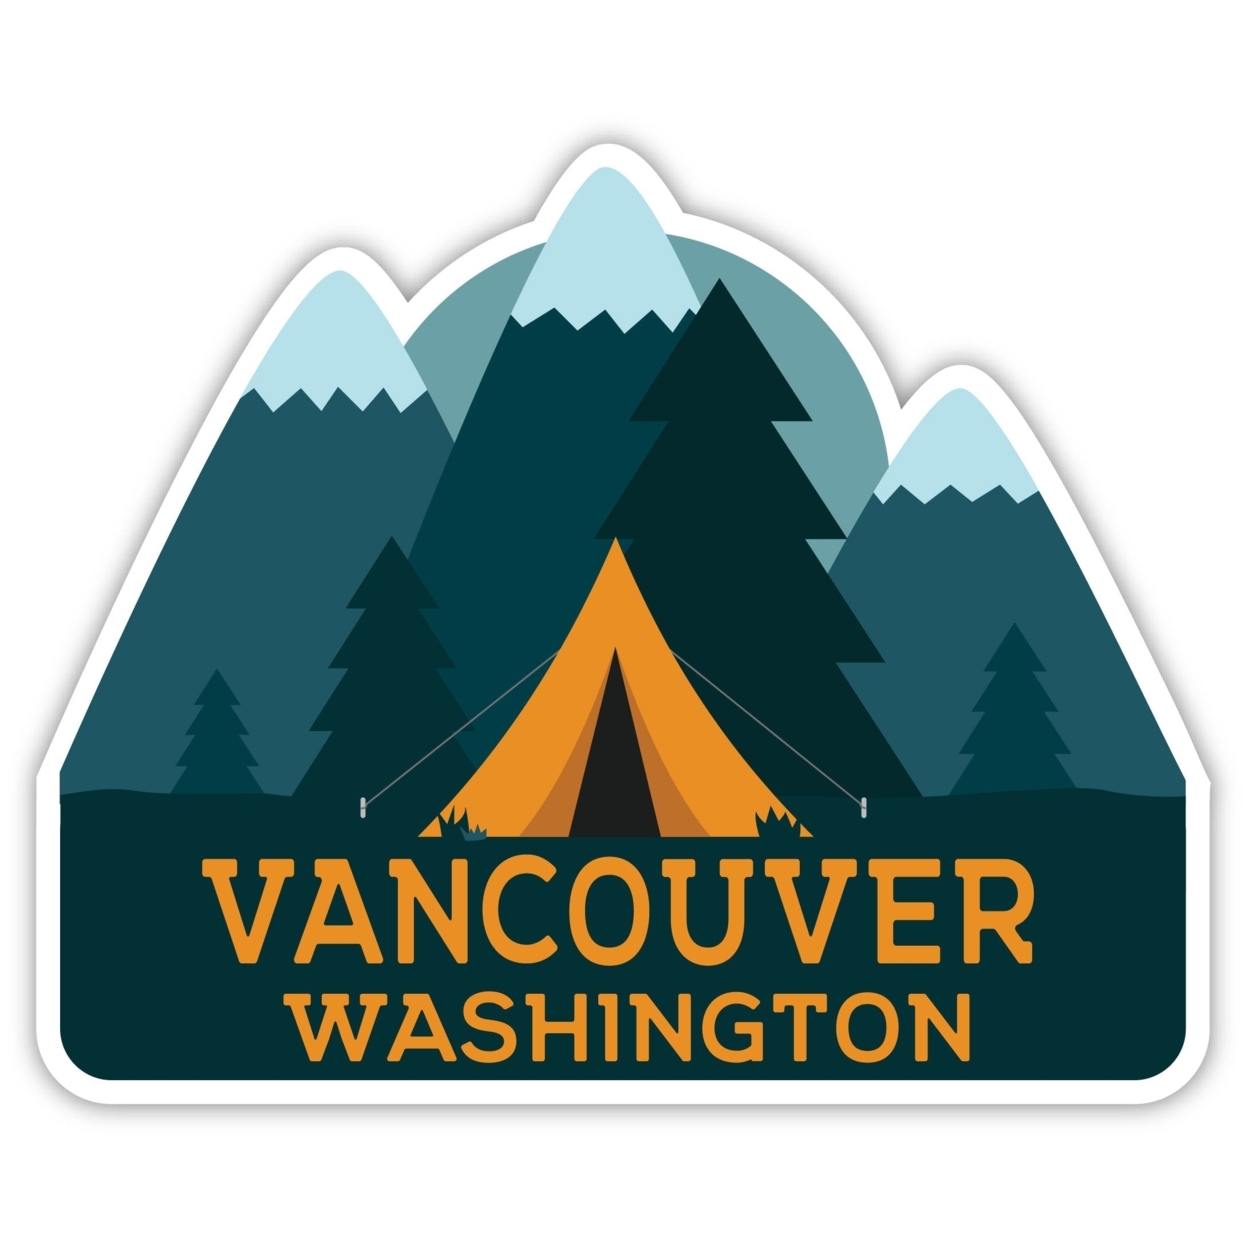 Vancouver Washington Souvenir Decorative Stickers (Choose Theme And Size) - Single Unit, 4-Inch, Tent